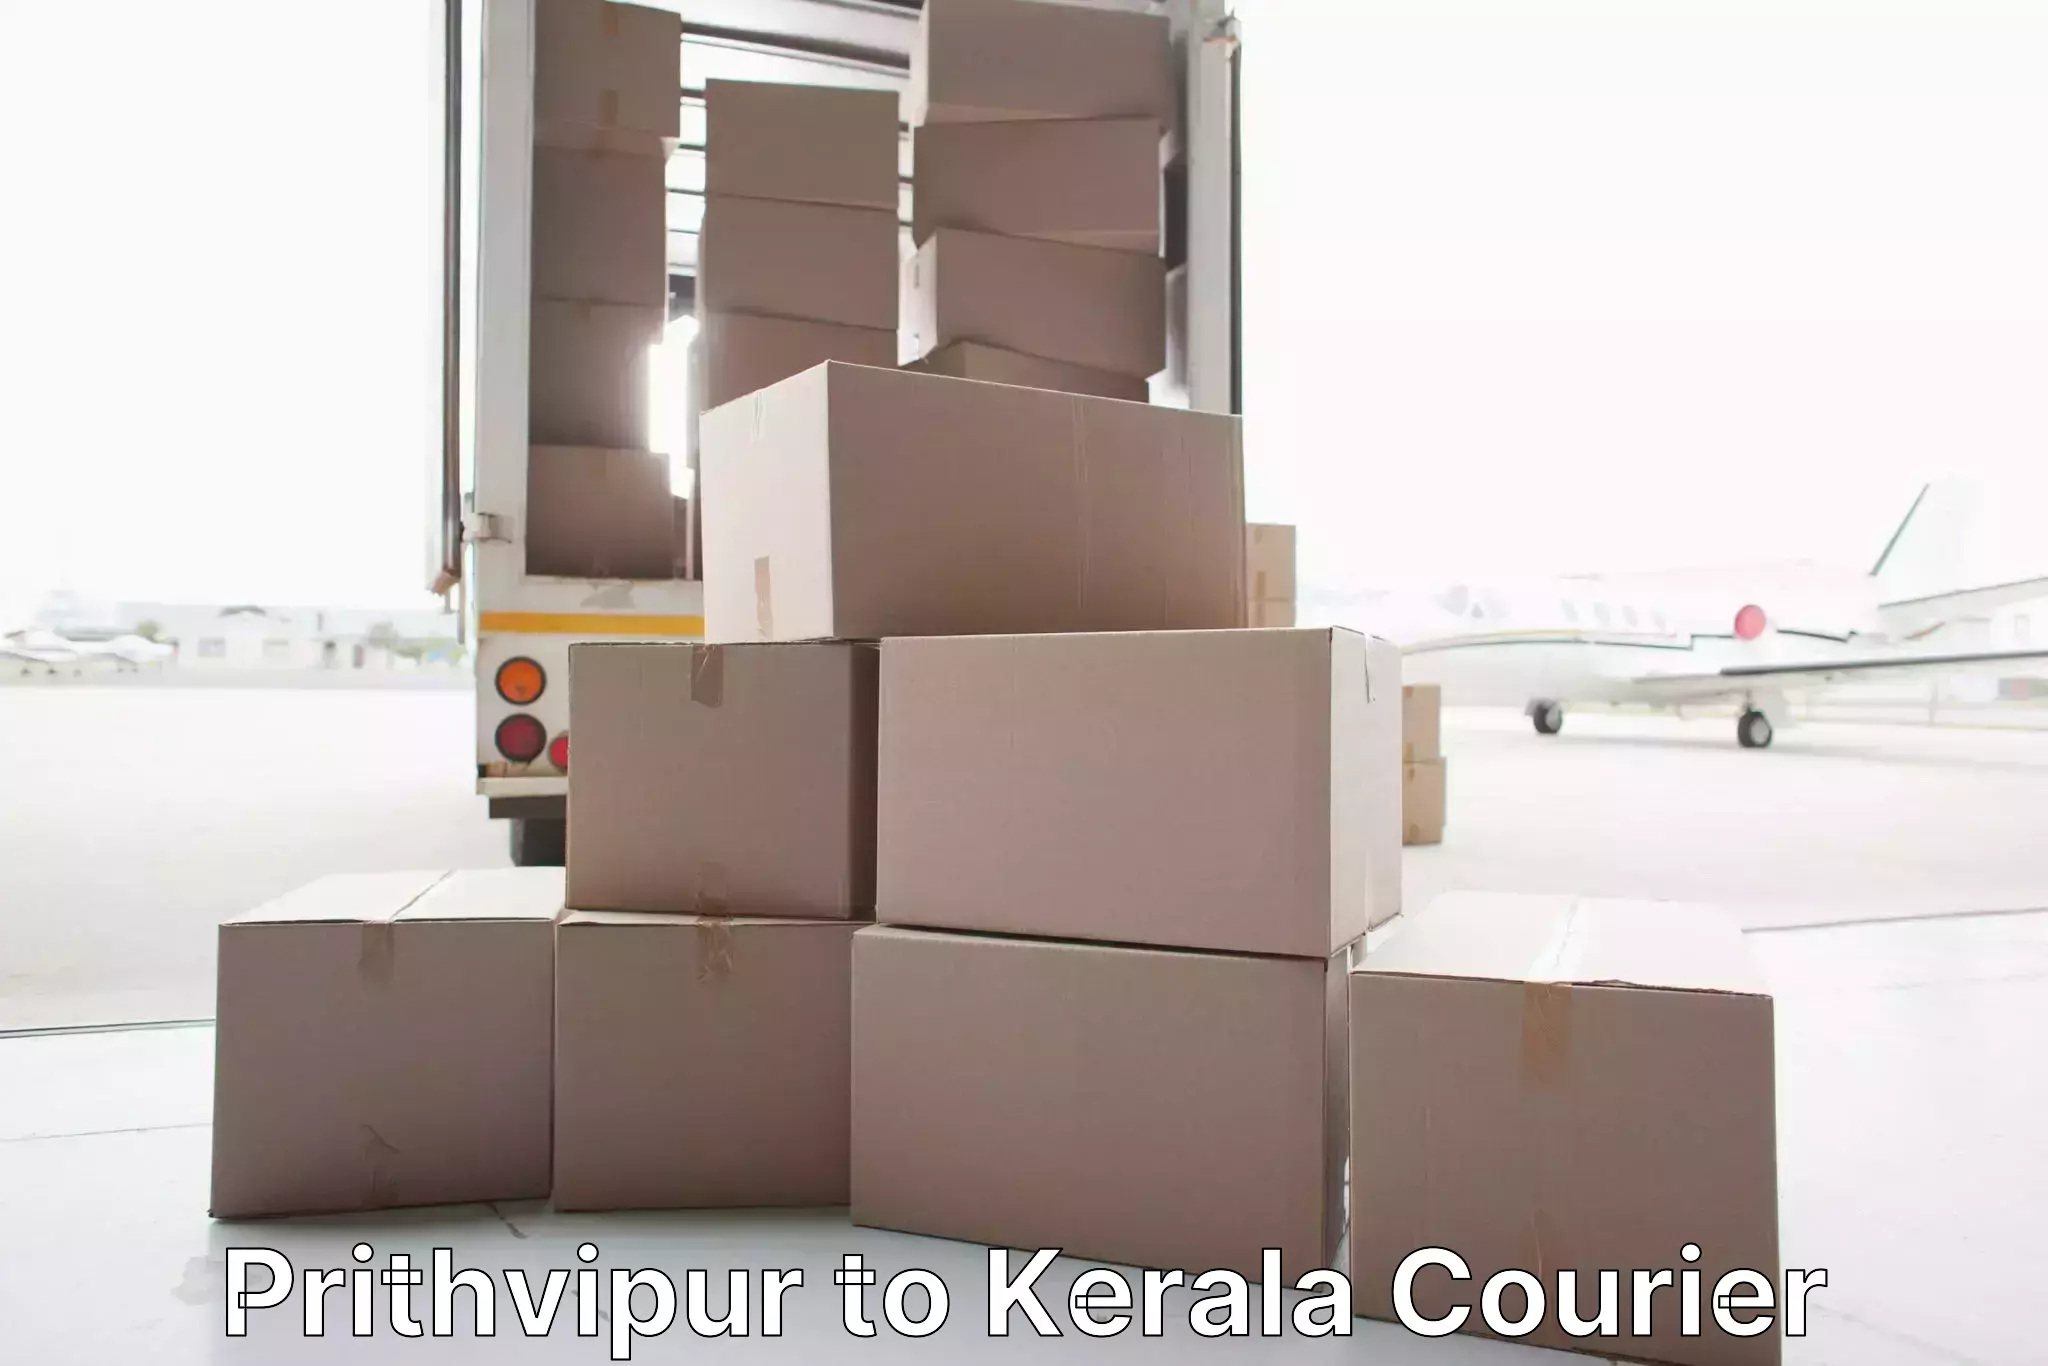 Furniture moving experts Prithvipur to Kanhangad